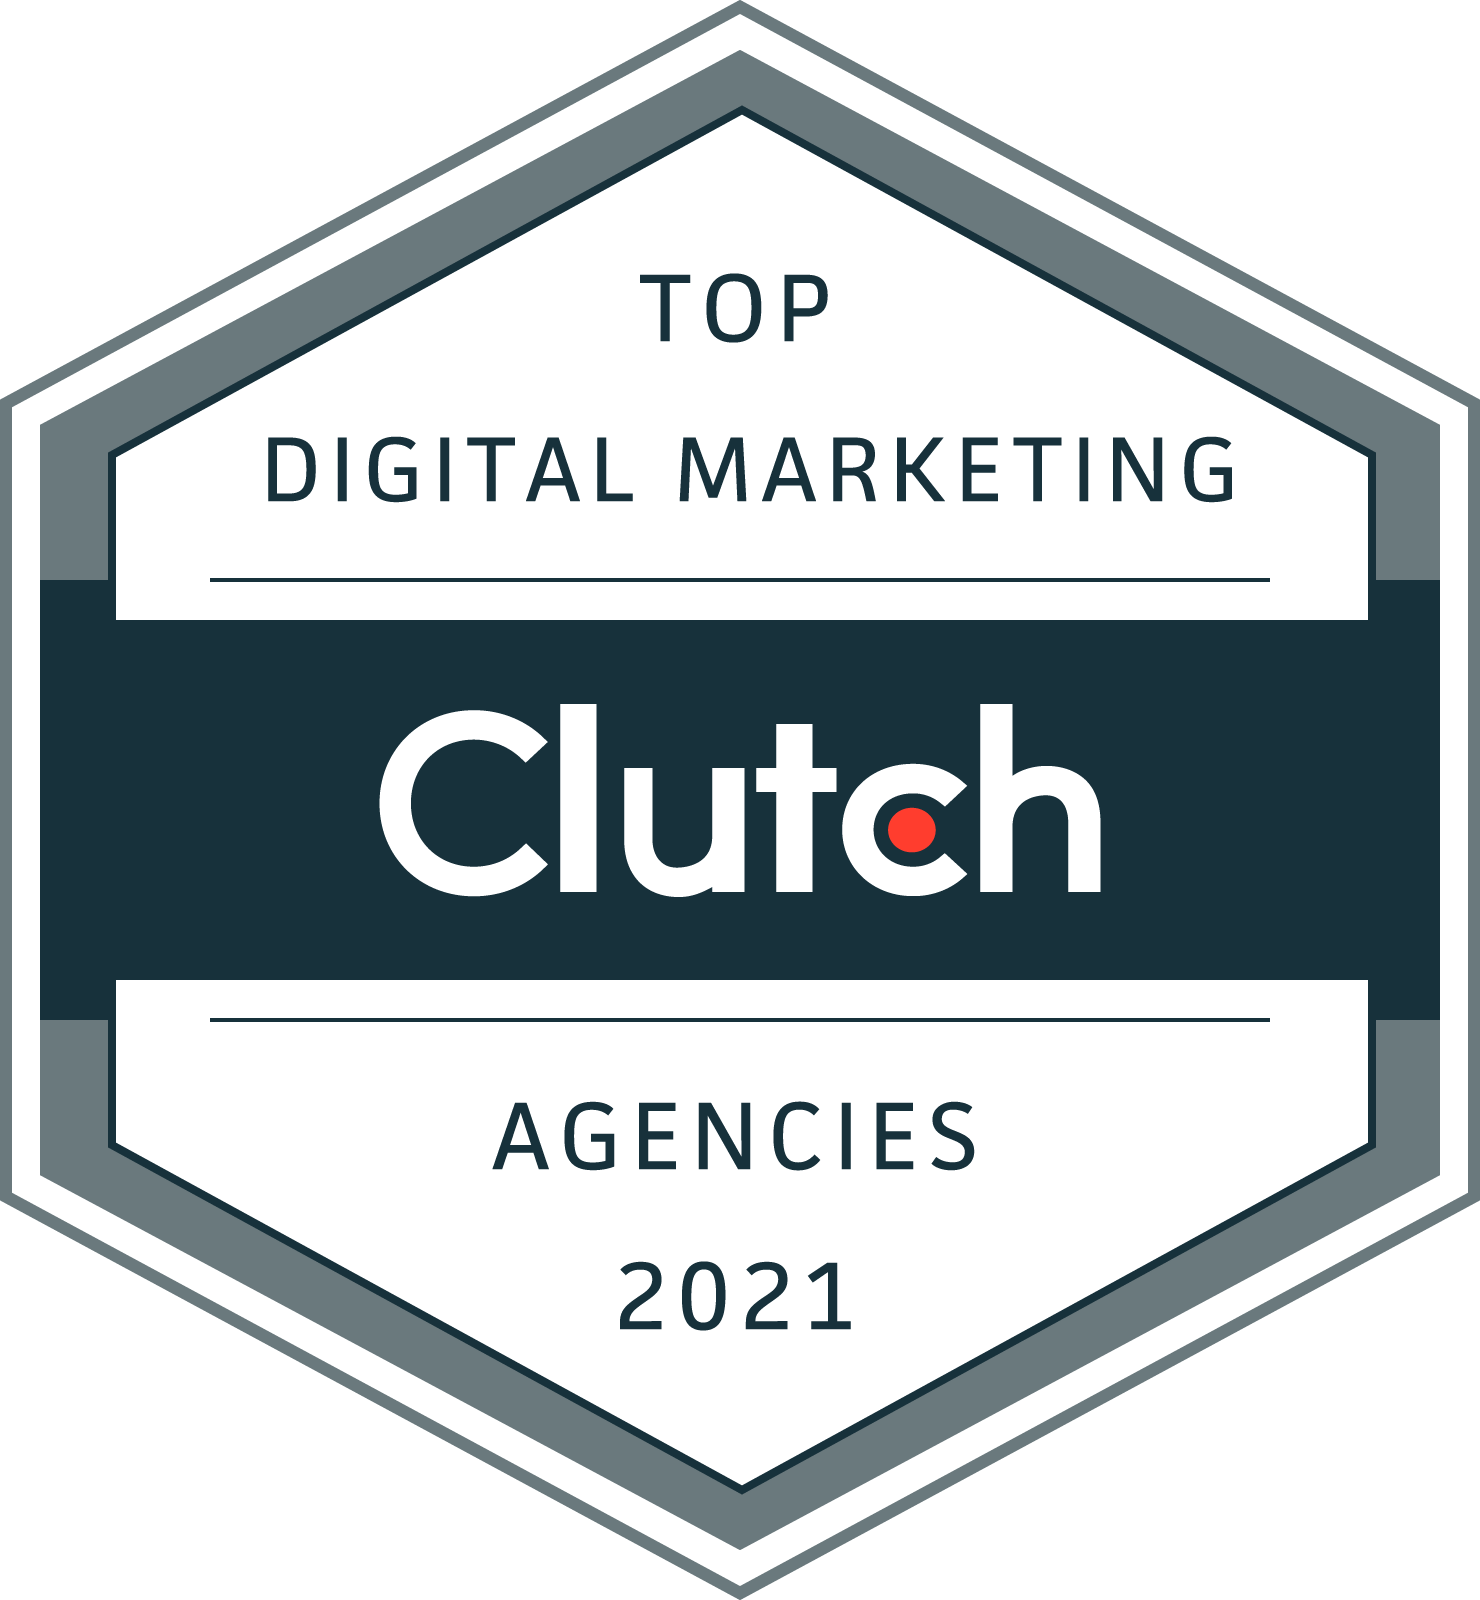 Top Digital Marketing Agencies 2021 by Clutch